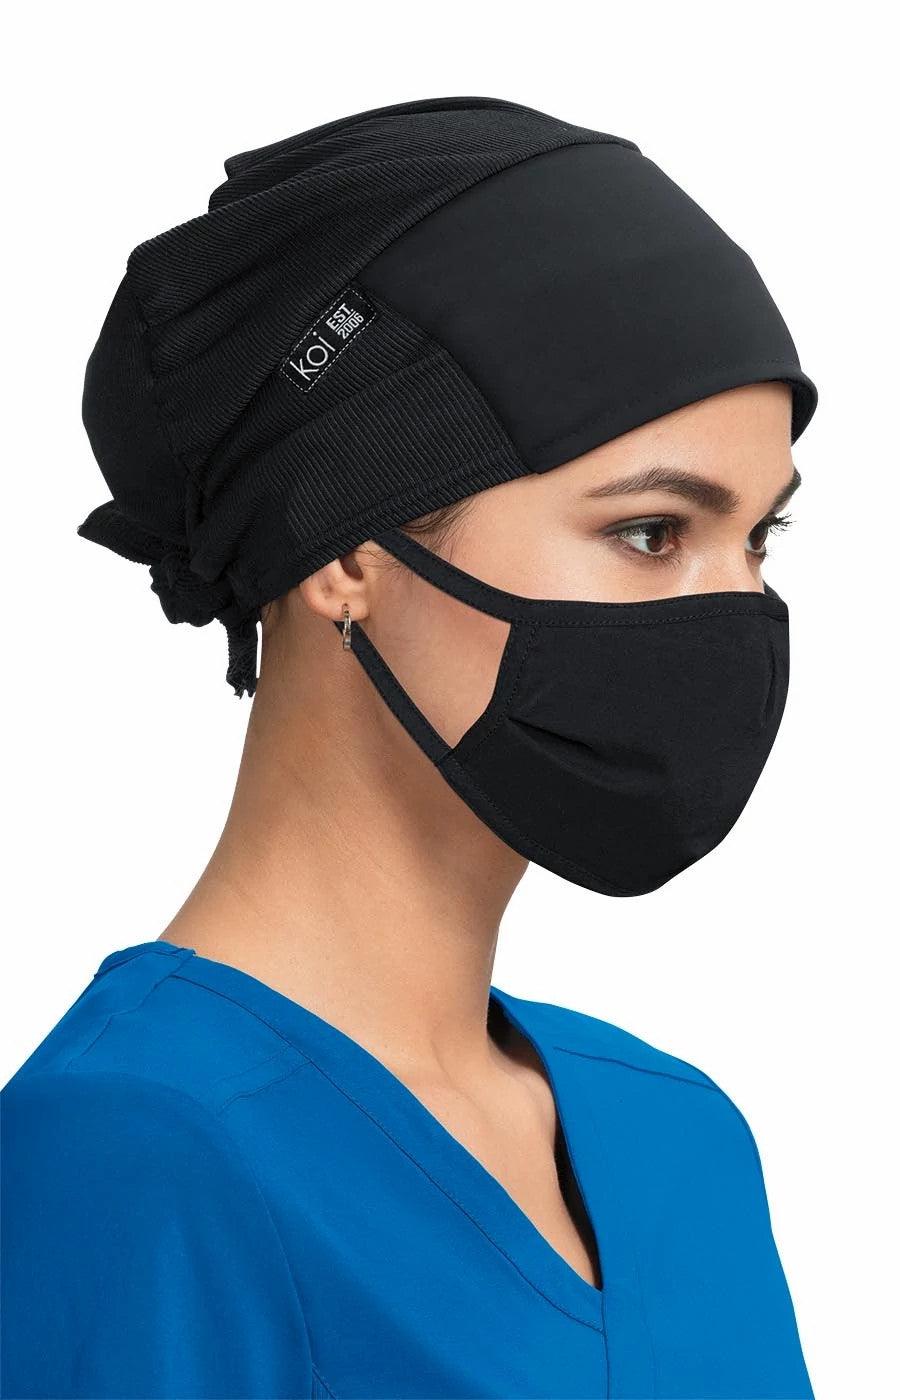 Koi - Unisex Surgical Hat Scrub Cap Koi Black  